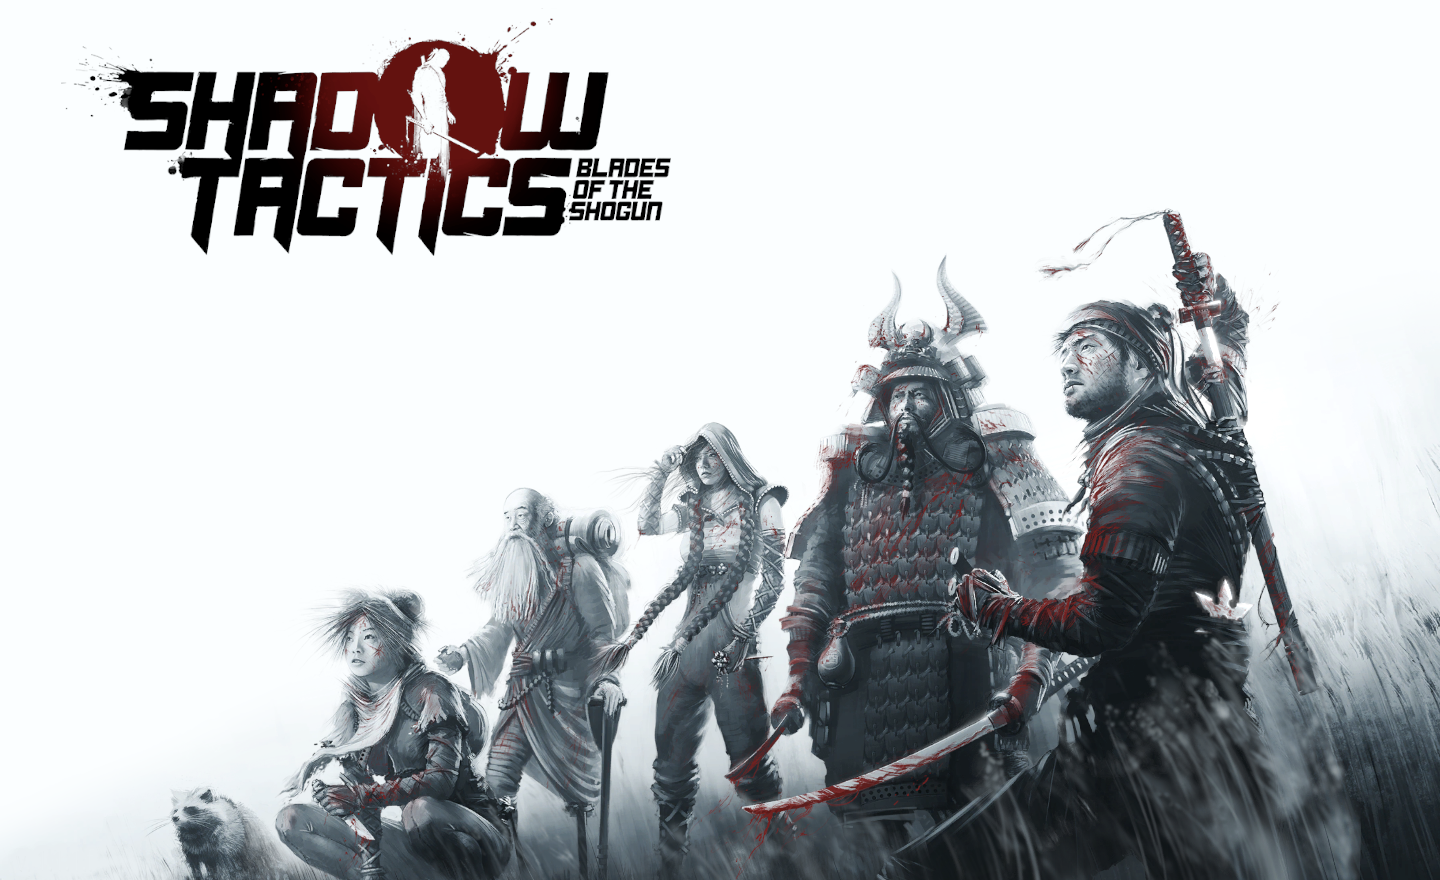 Shadow tactics: Blade of shogun